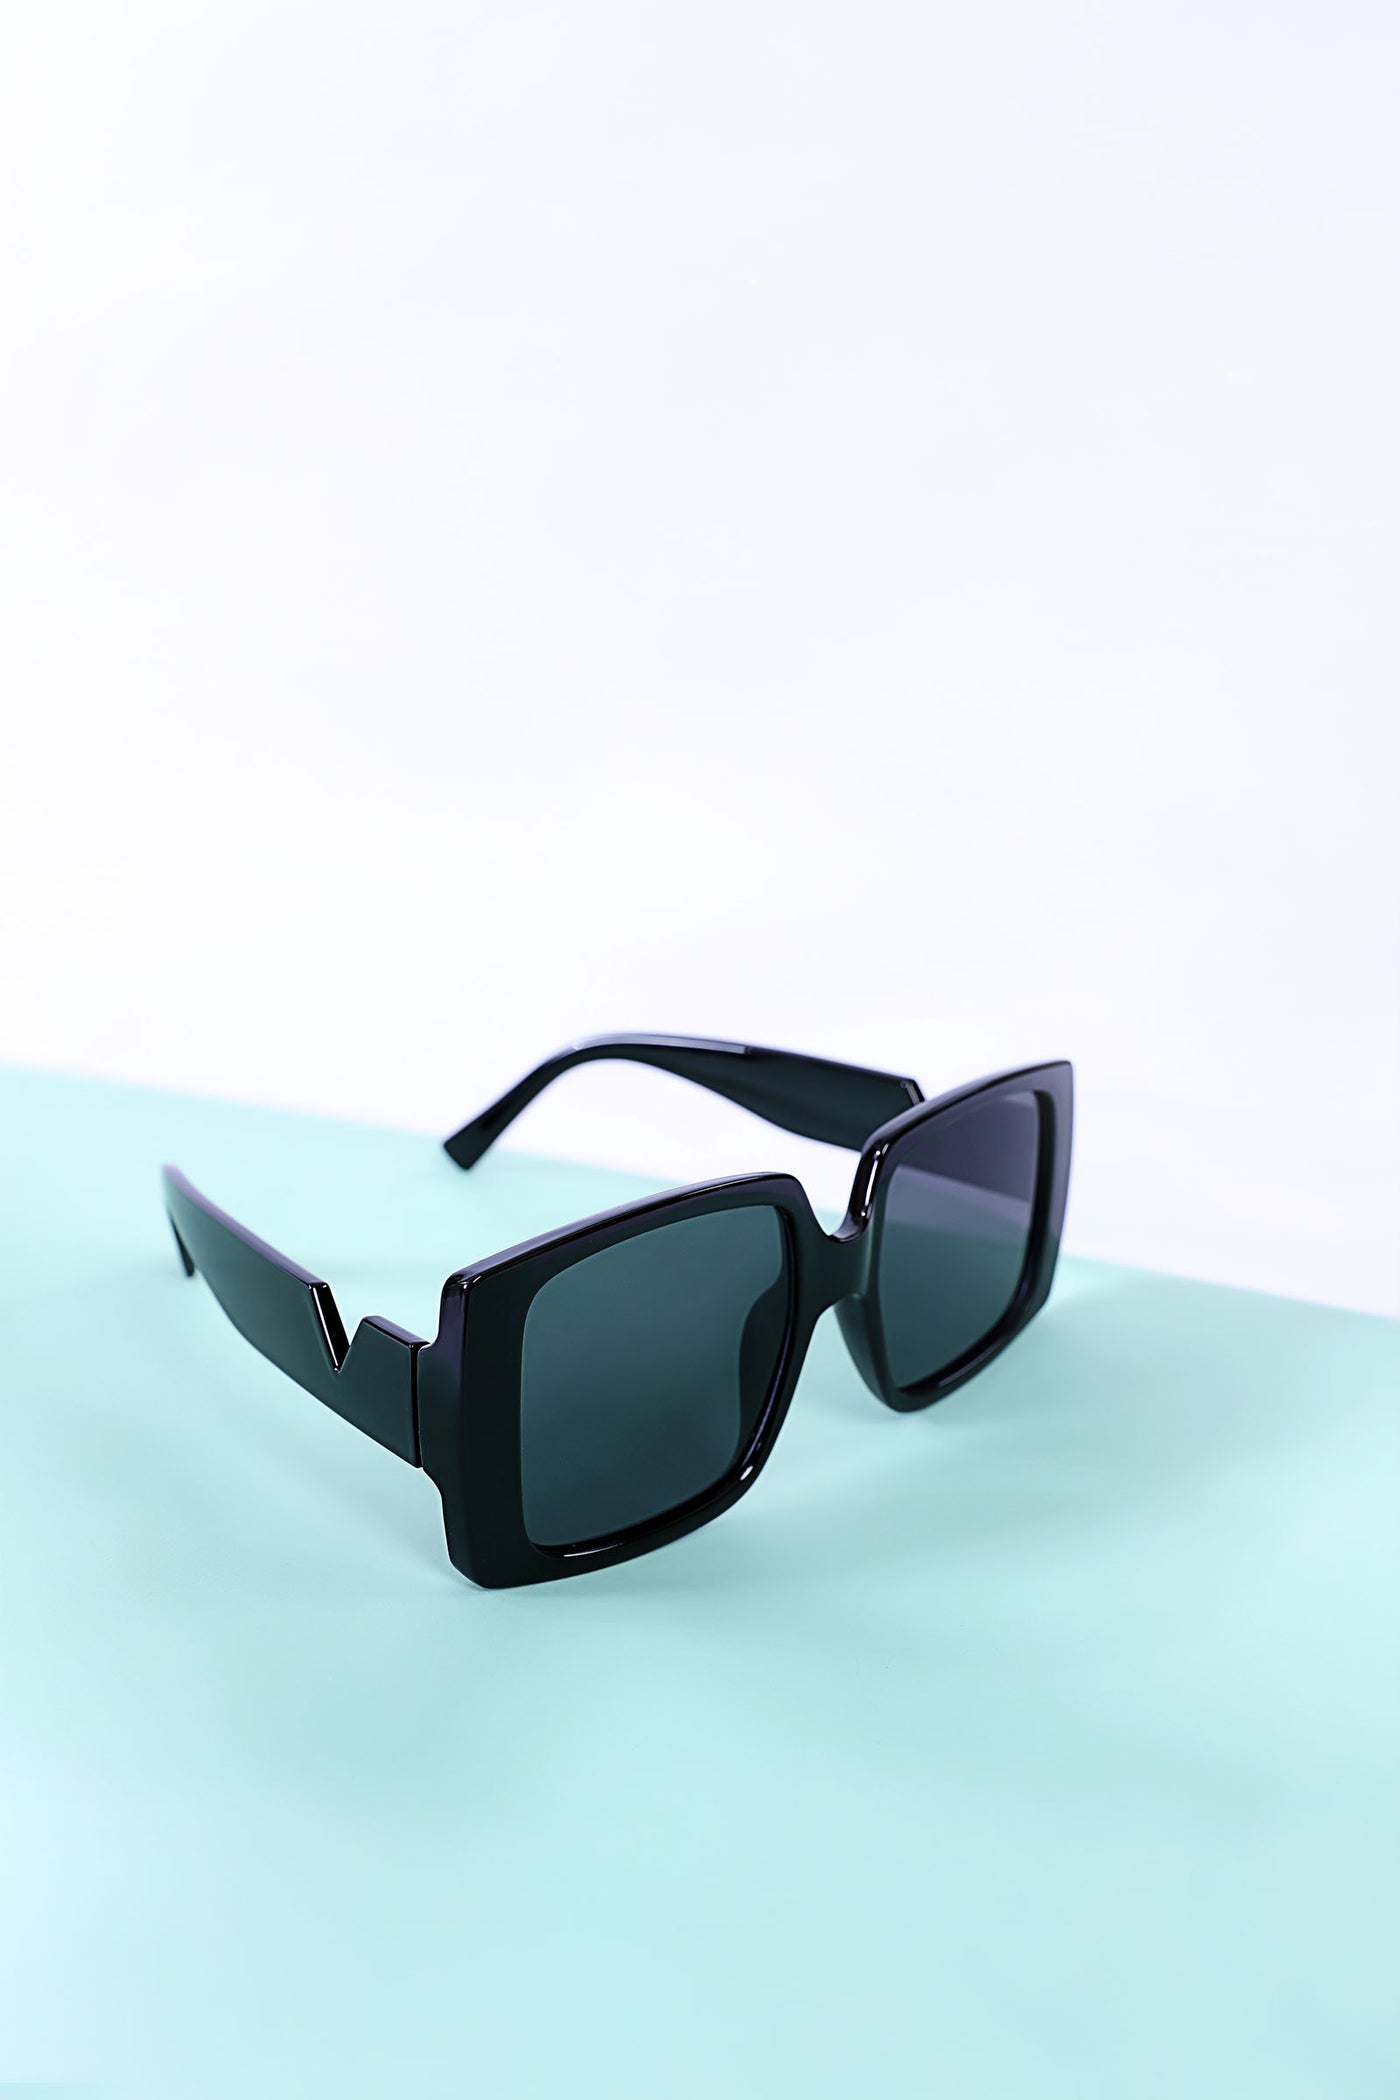 Sunglasses | ASG-S24-18